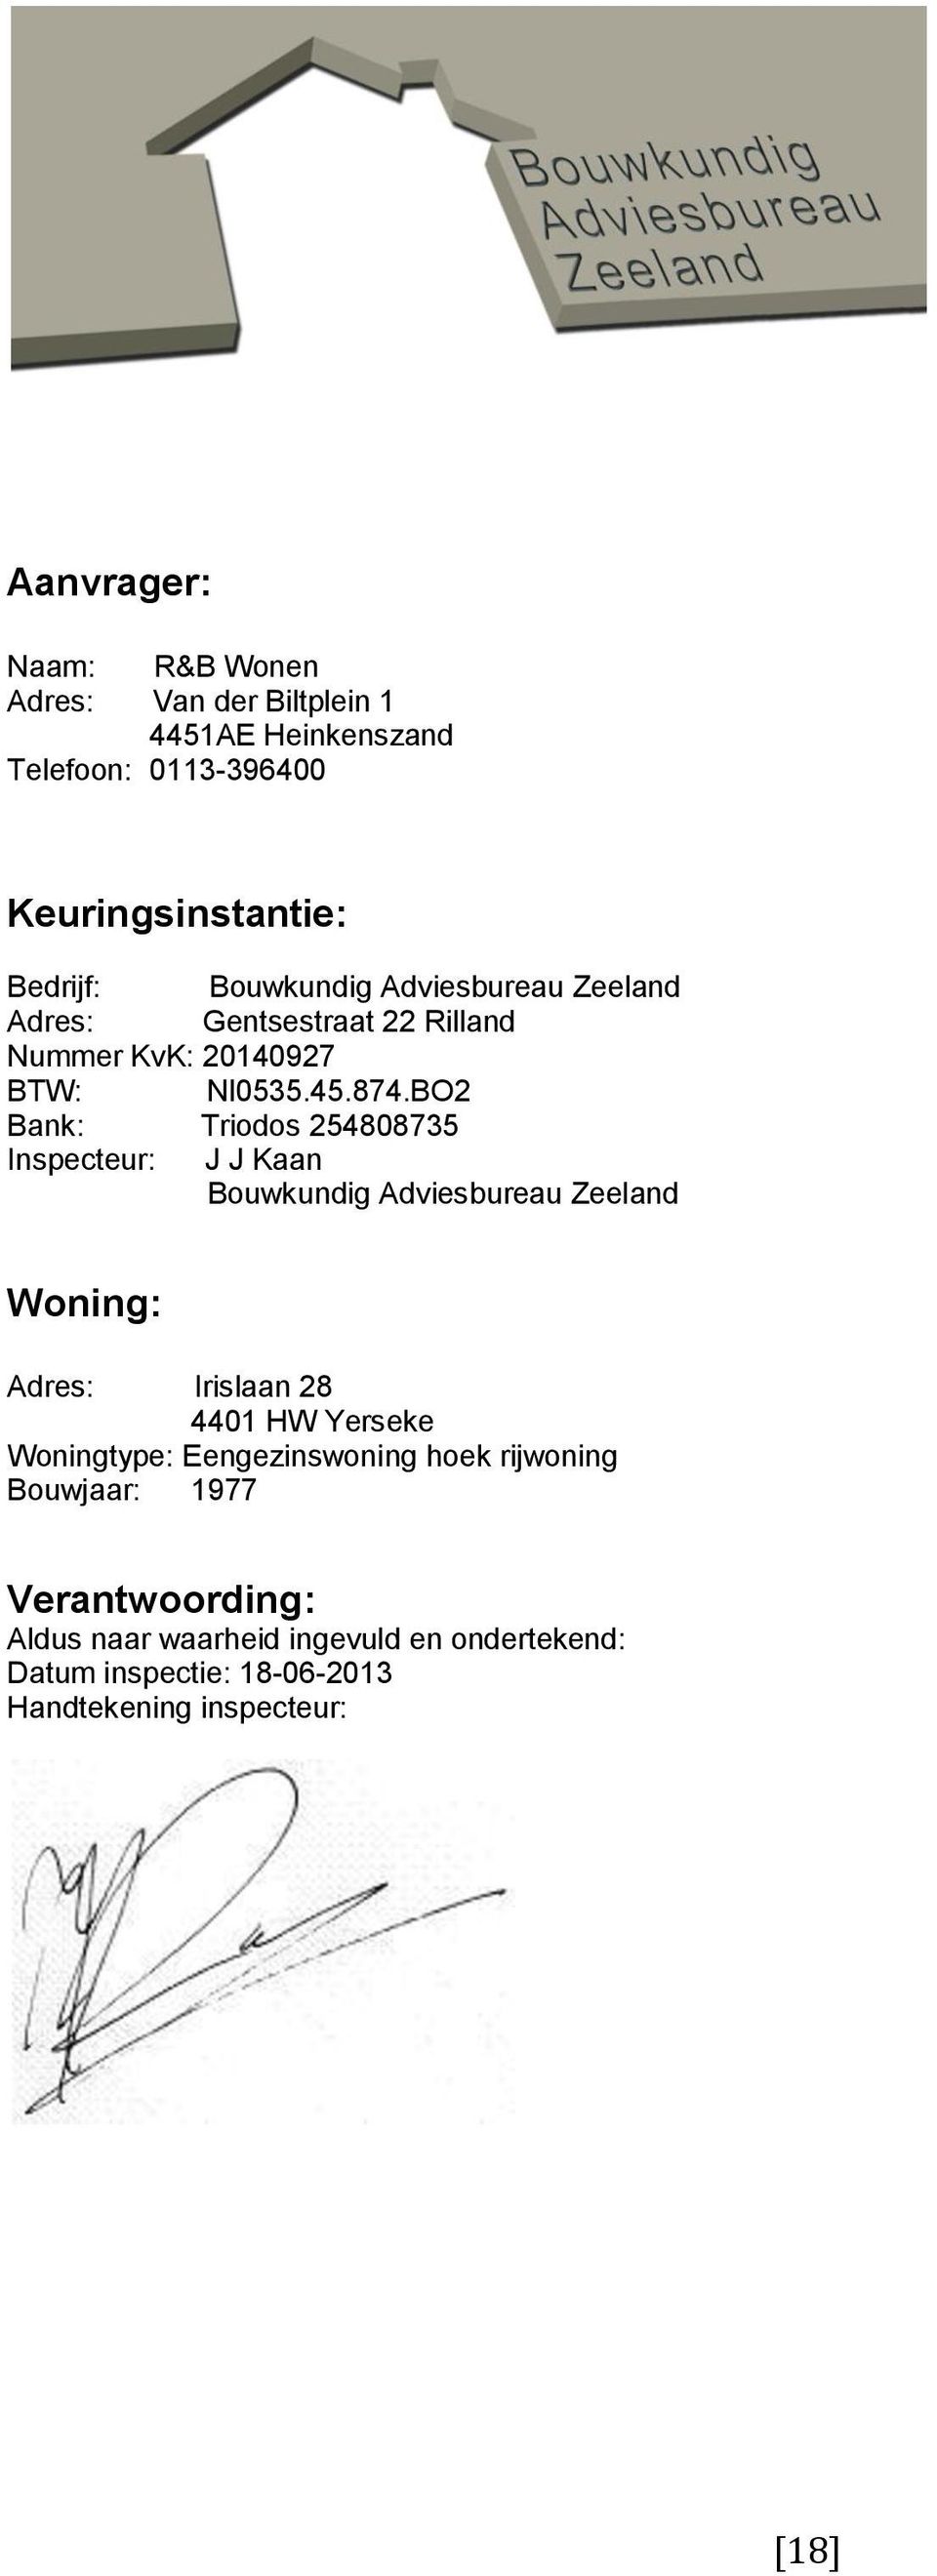 BO2 Bank: Triodos 254808735 Inspecteur: J J Kaan Bouwkundig Adviesbureau Zeeland Woning: Adres: Irislaan 28 4401 HW Yerseke